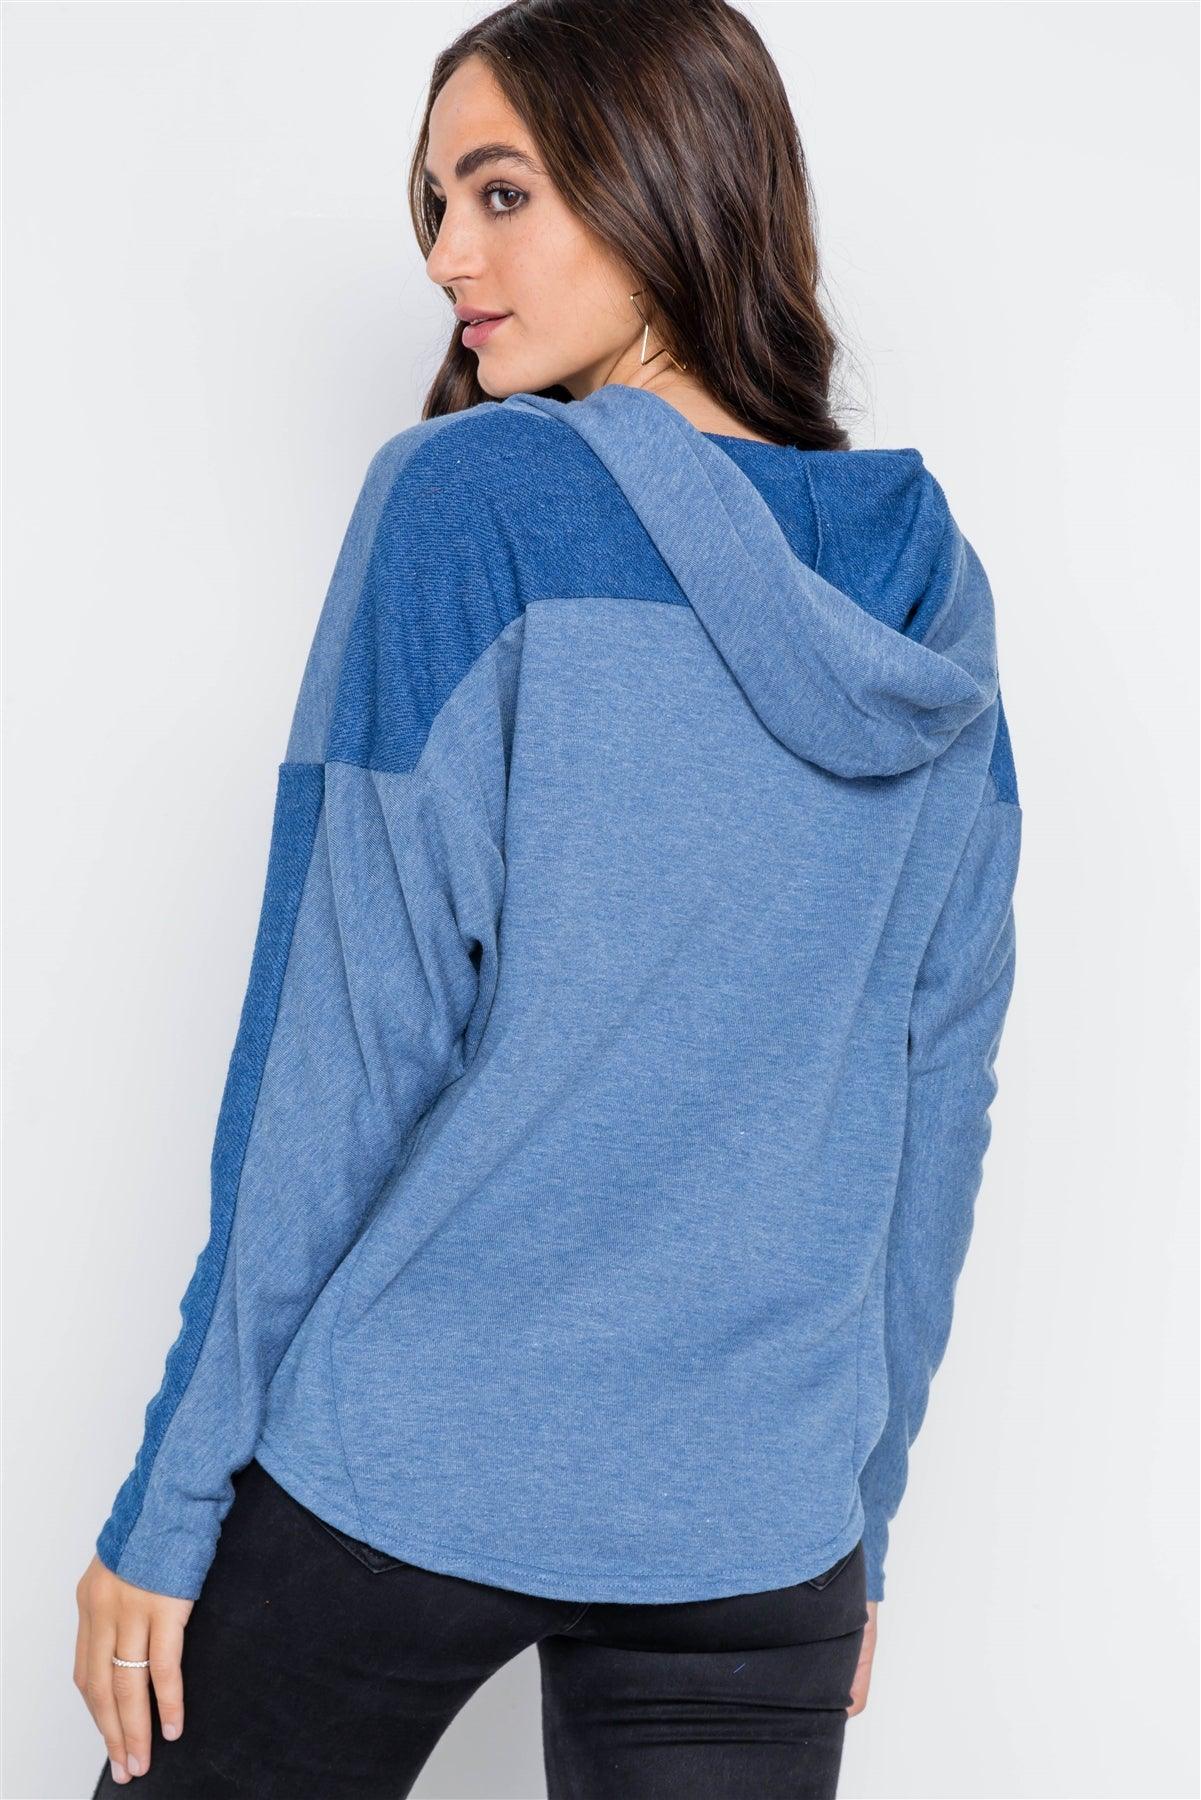 Blue Contrast Long Sleeves Hoodie Sweater /1-2-2